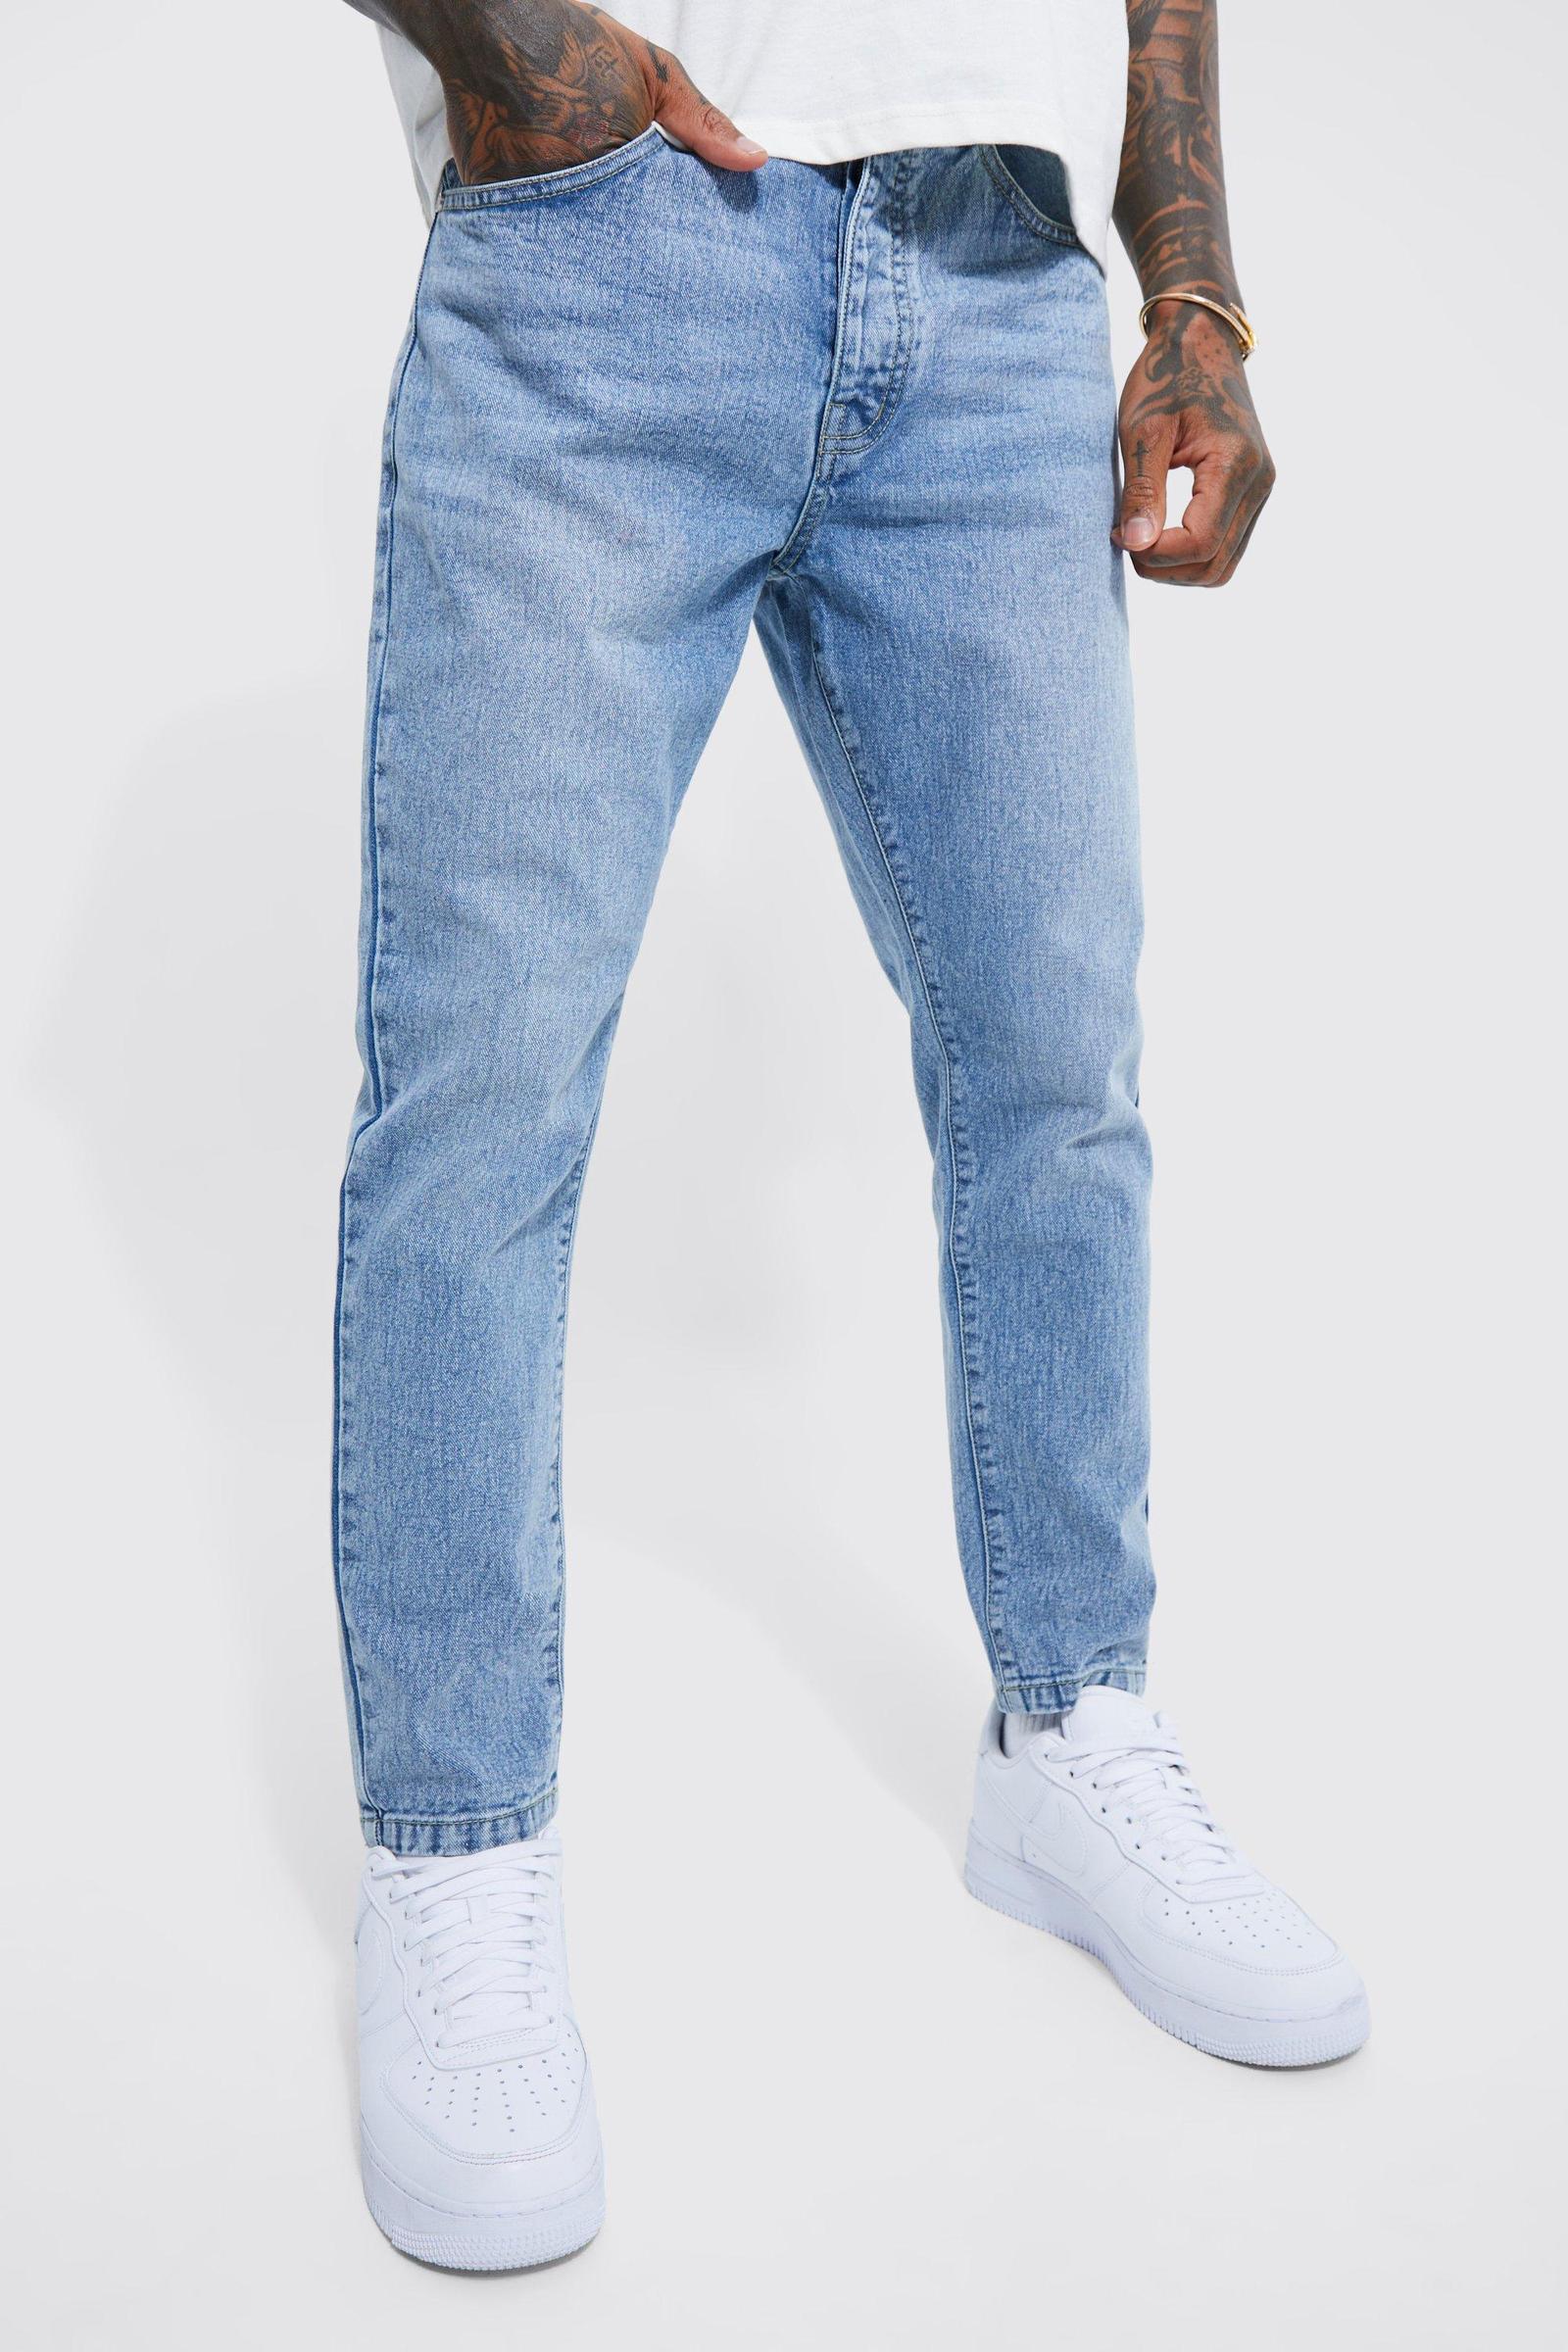 niebieskie spodnie jeans zwężane nogawki guziki